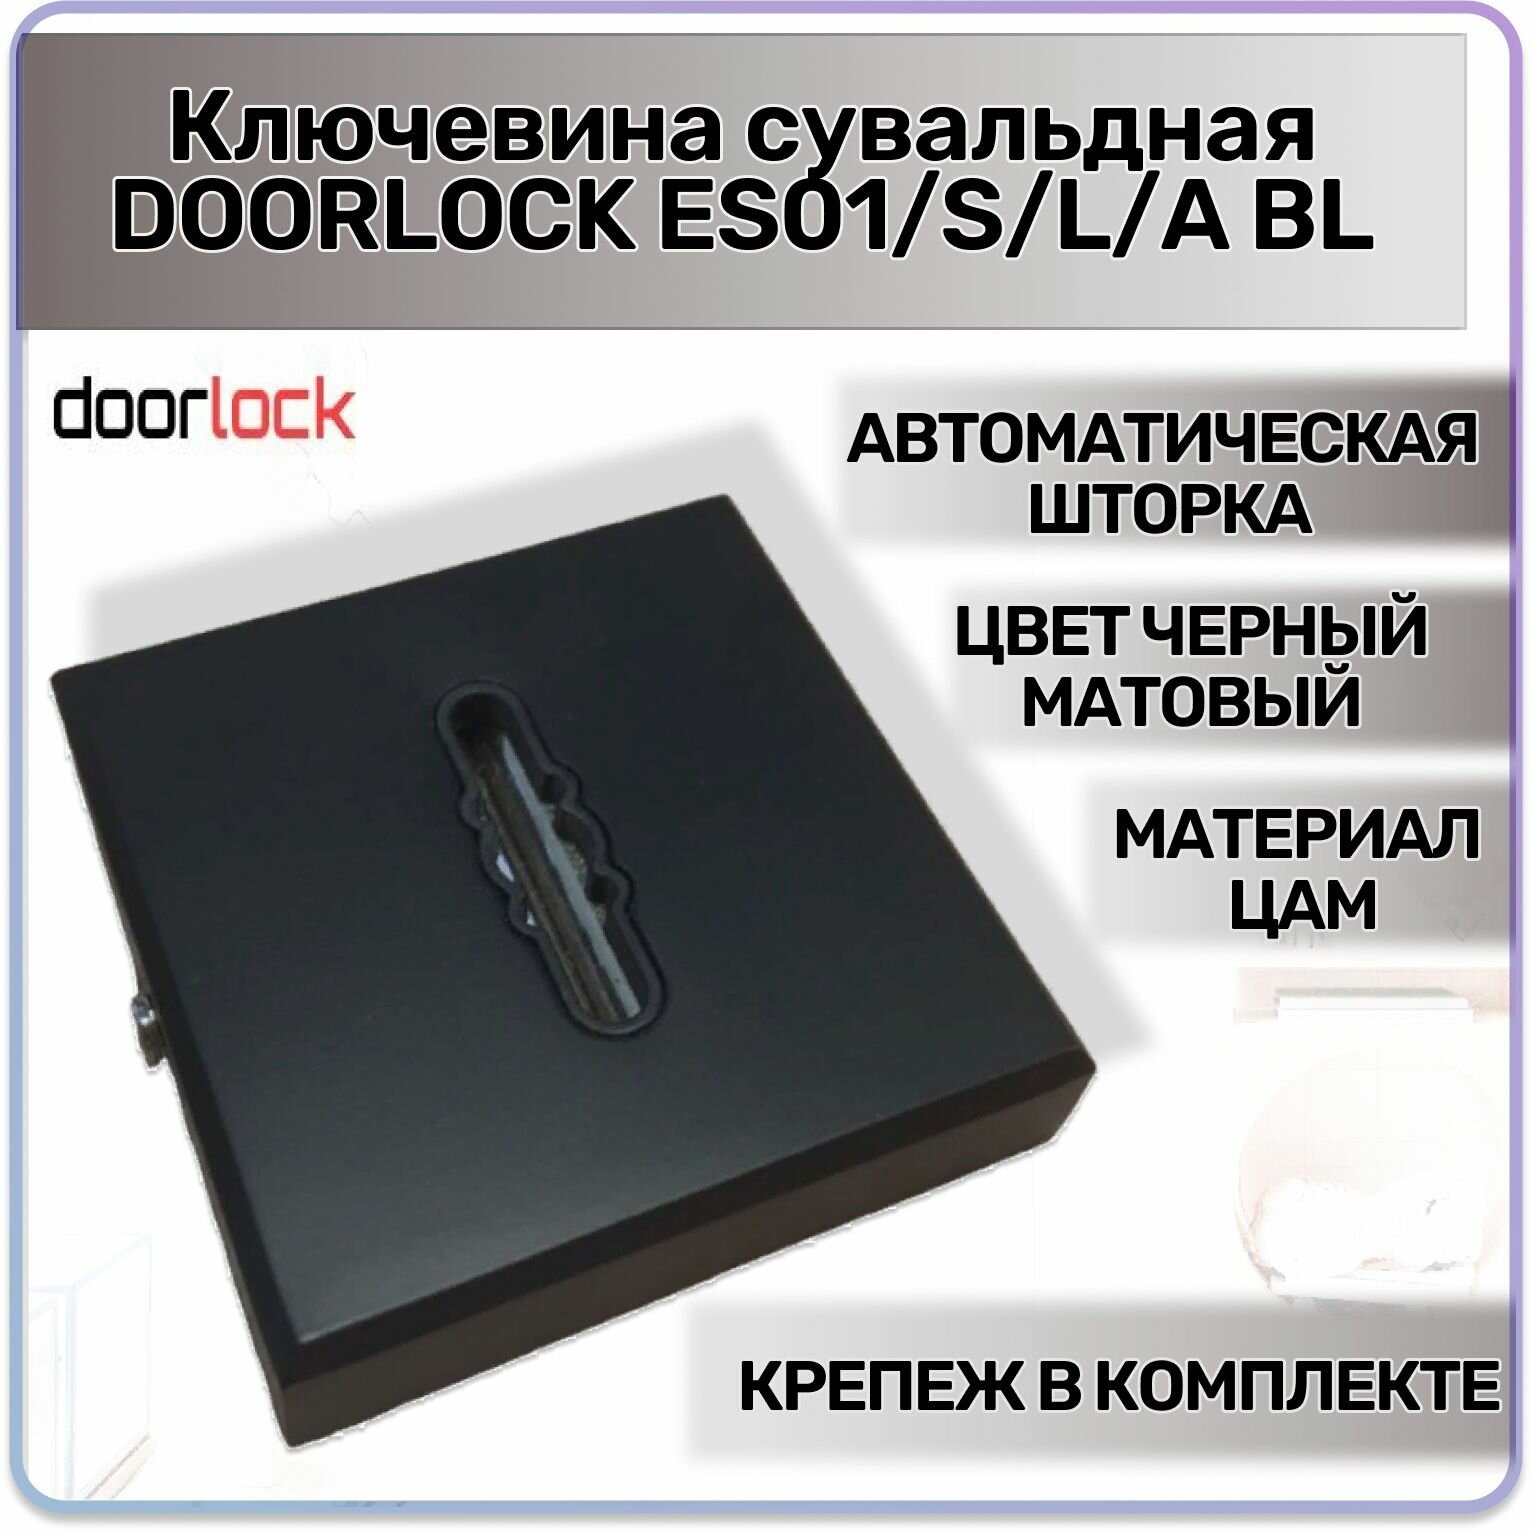 Ключевина сувальдная DOORLOCK ES01/S/L/A BL черная